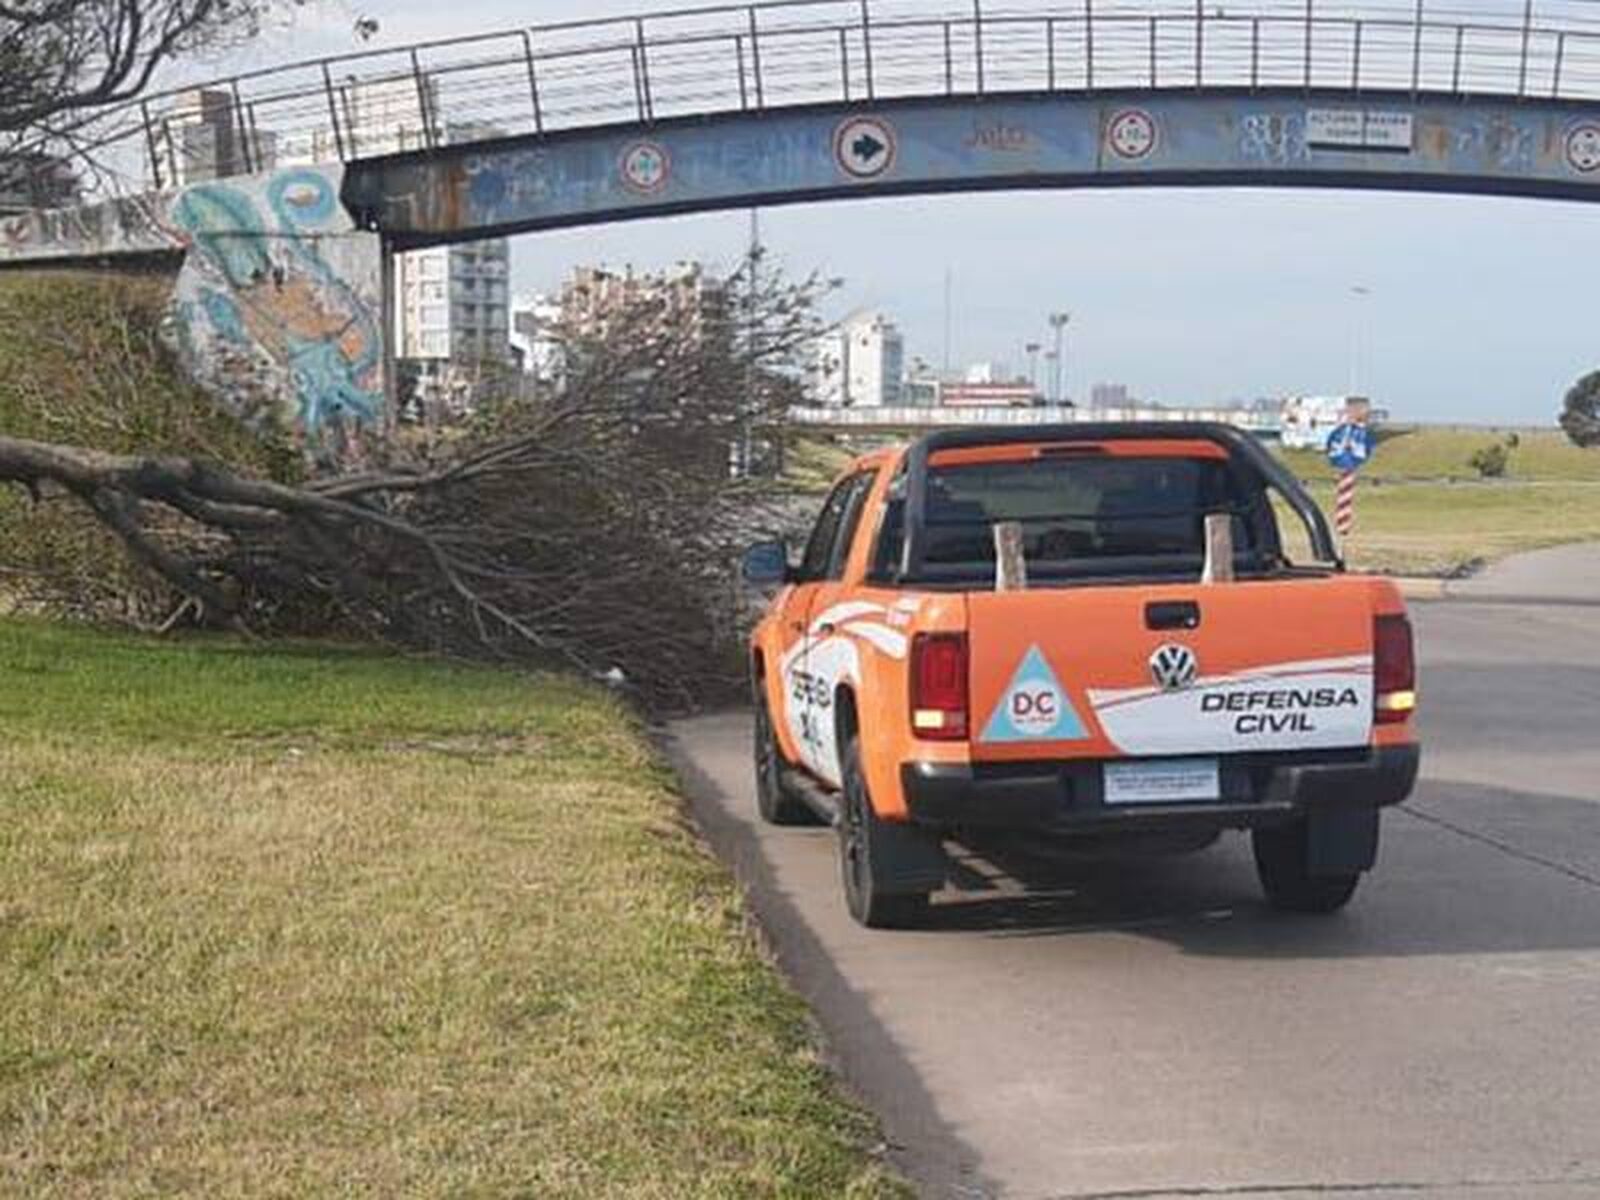 Mar del Plata: Fuertes vientos arrasan la ciudad dejando emergencias en su paso